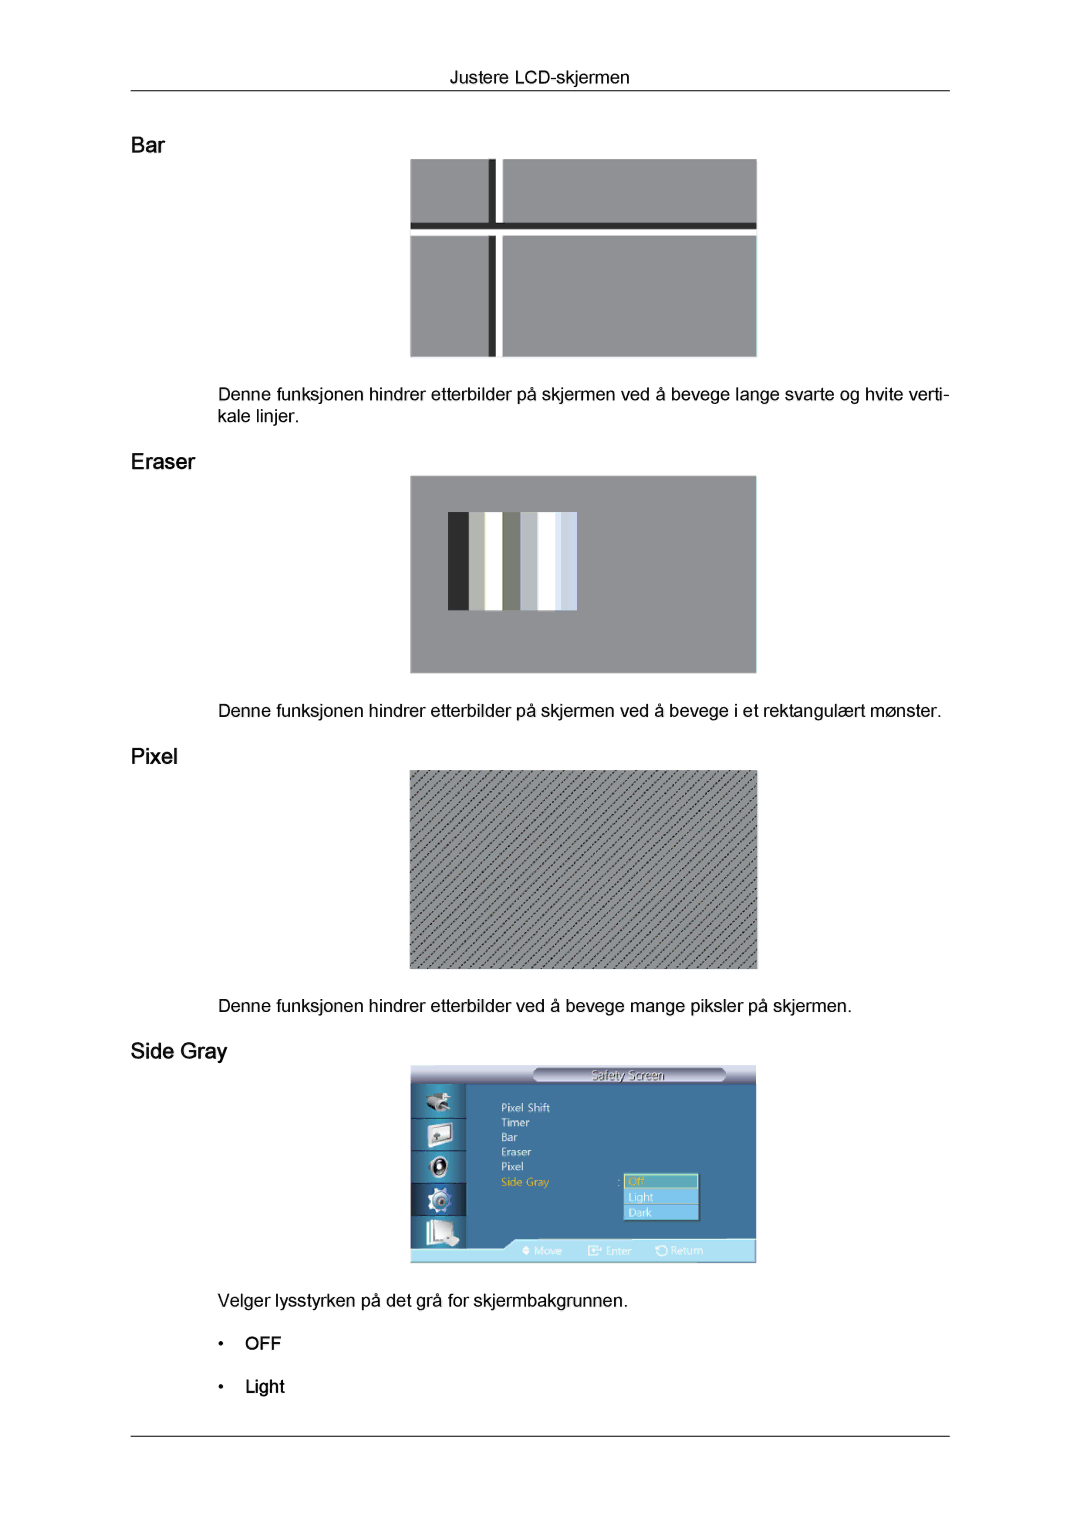 Samsung LH40HBPLBC/EN, LH46HBPLBC/EN manual Bar, Eraser, Pixel, Side Gray, Light 